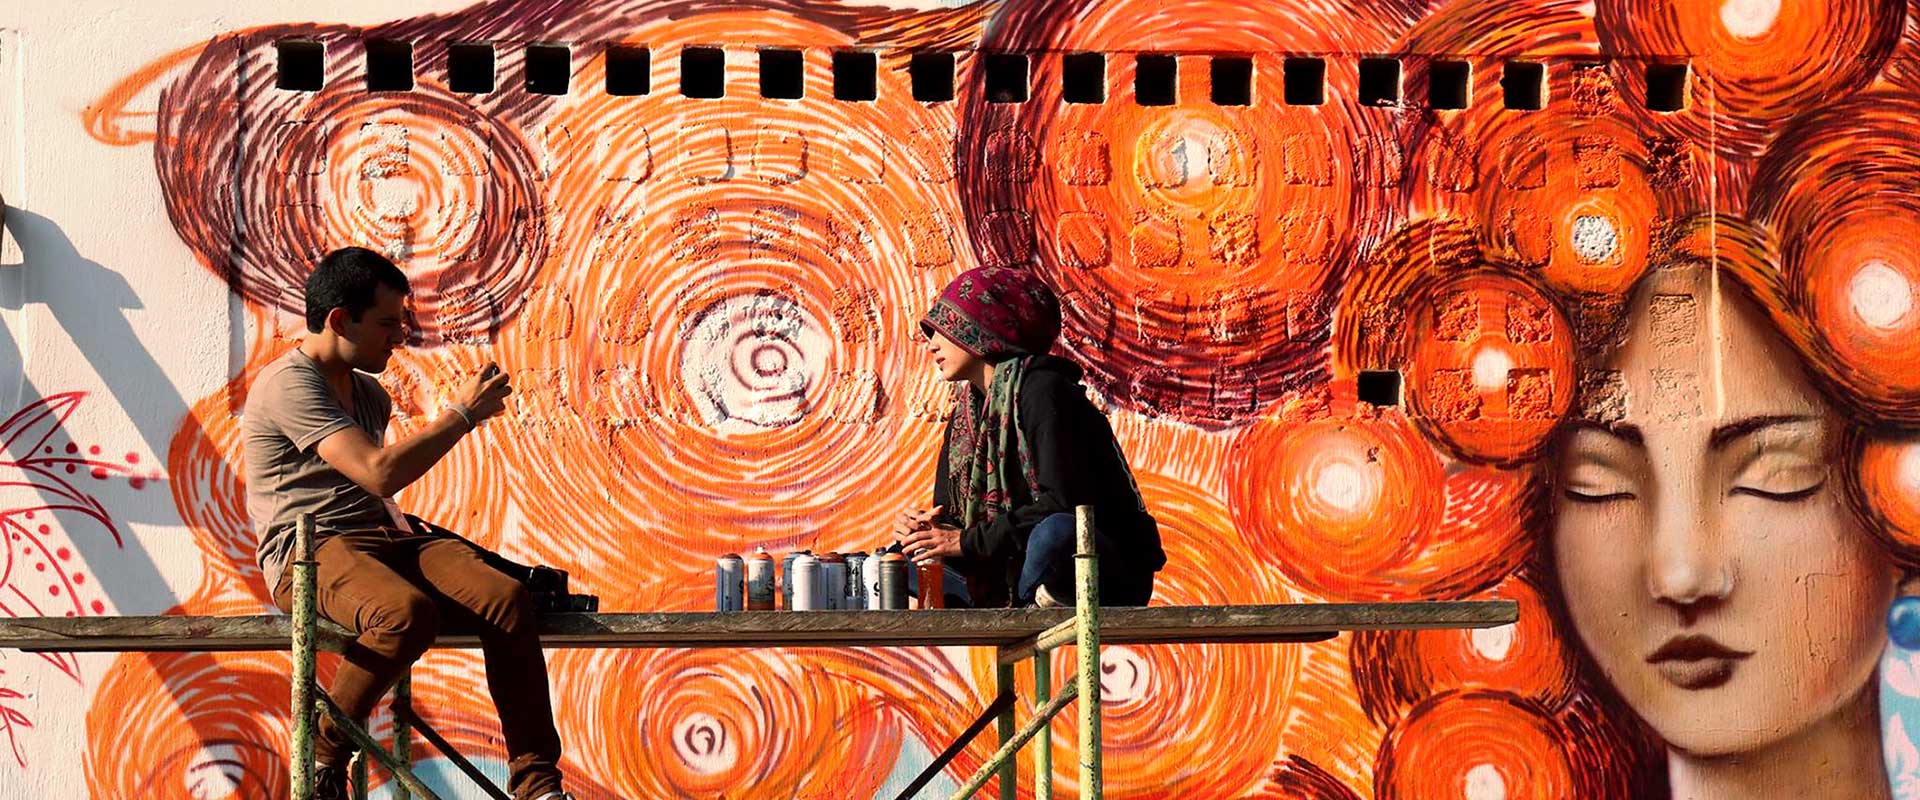 Un grupo de grafiteras (todas mujeres jóvenes) pintó murales de color naranja en la Zona 18 de la Ciudad de Guatemala en apoyo de ONU Mujeres y la campaña ÚNETE para poner fin a la violencia contra las mujeres. Foto: ONU Mujeres/Carlos Rivera